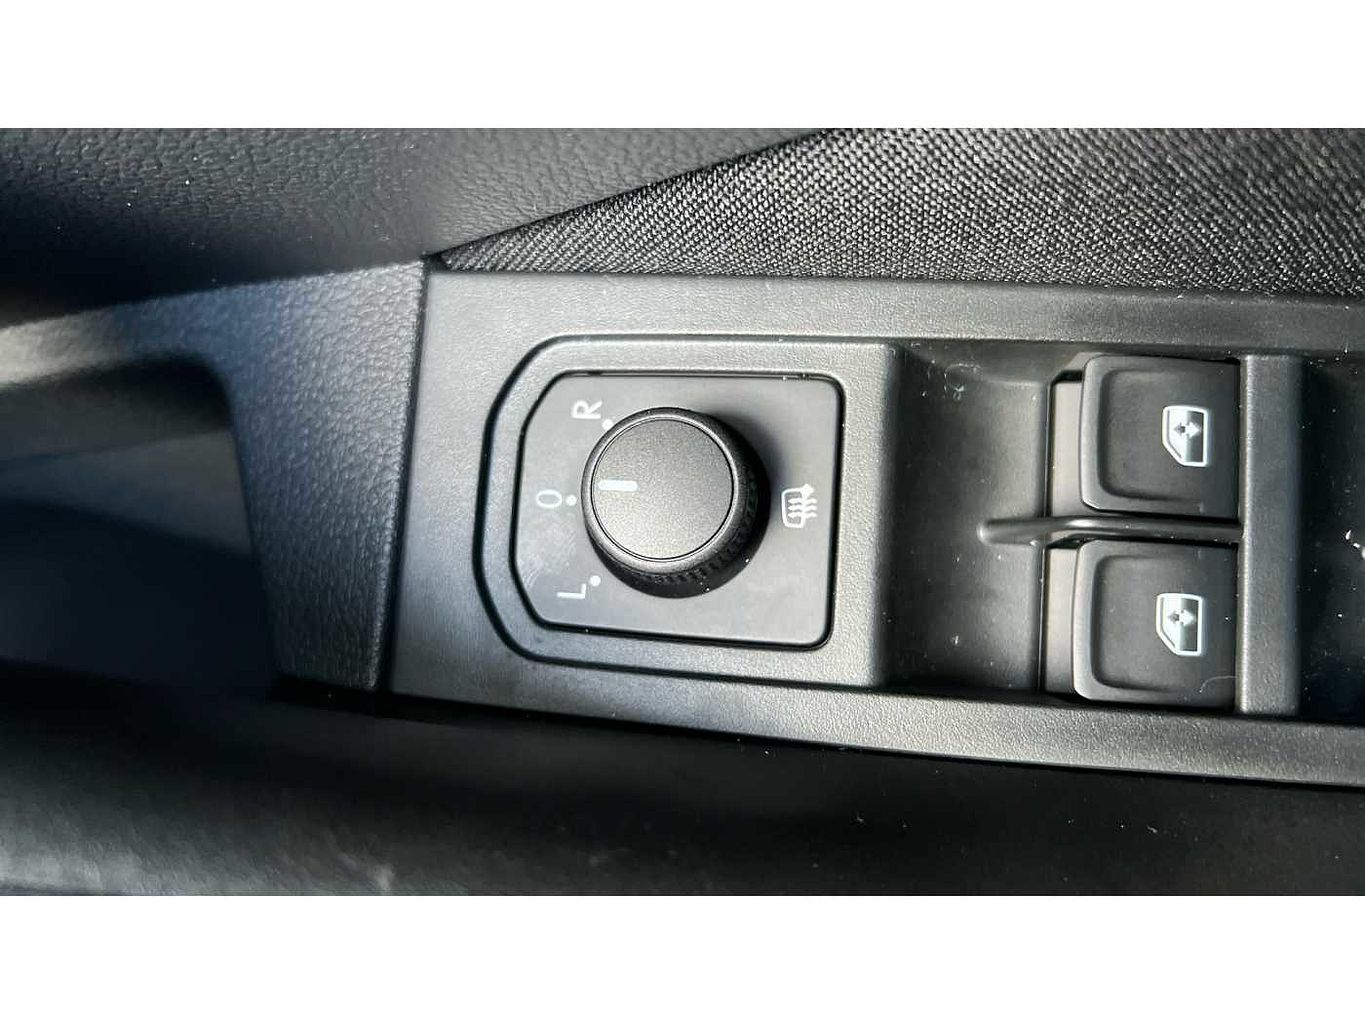 SKODA Kamiq 1.5 TSI (150ps) SE Drive DSG SUV